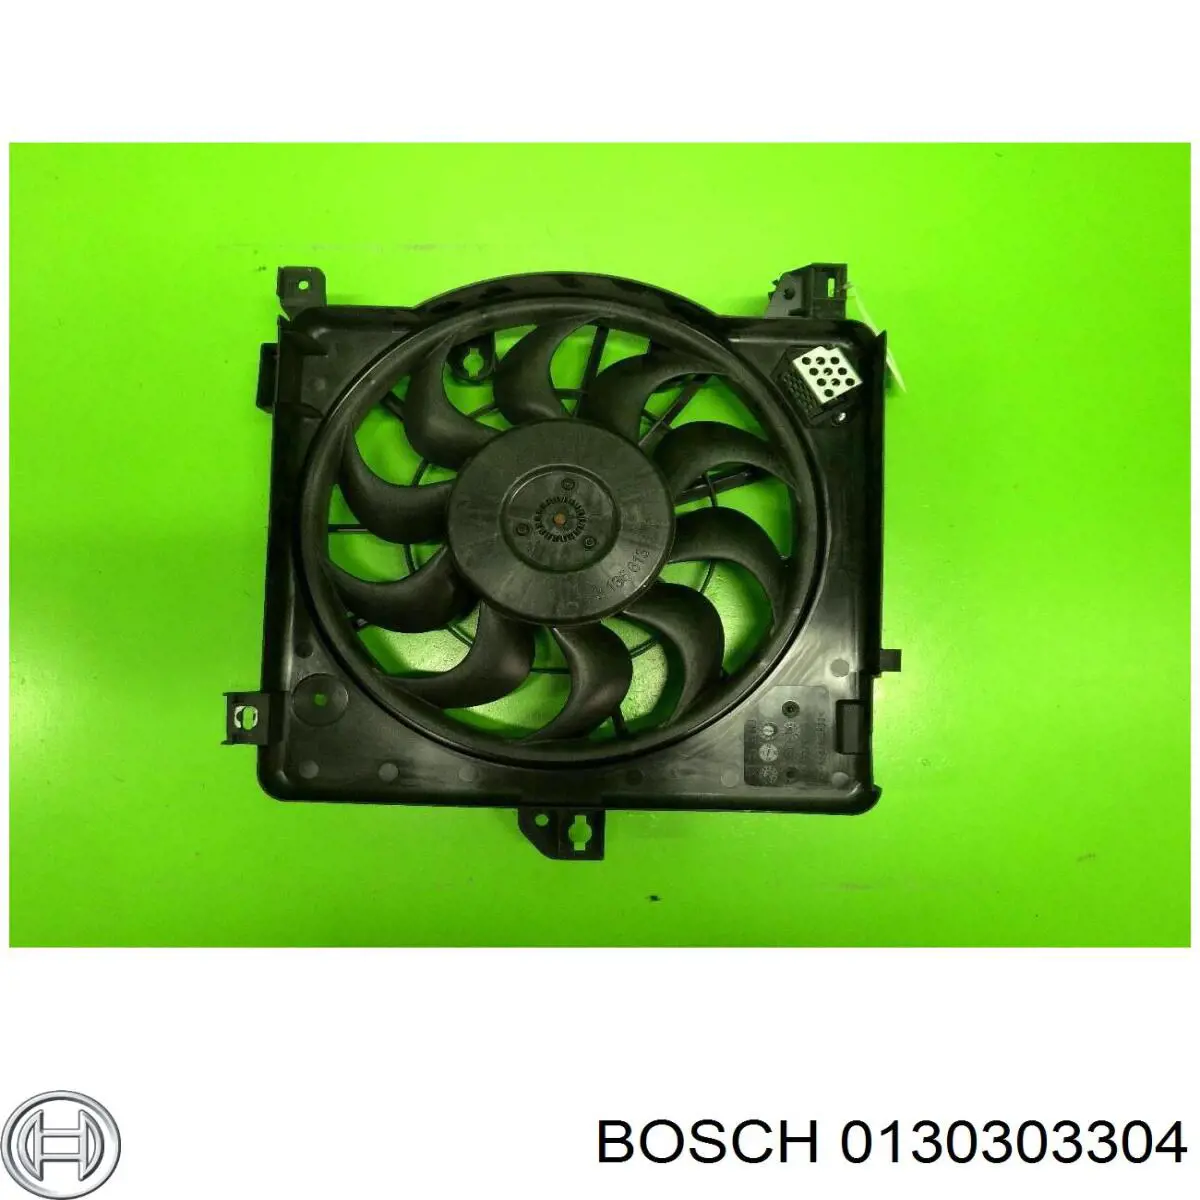 0130303304 Bosch rodete ventilador, refrigeración de motor